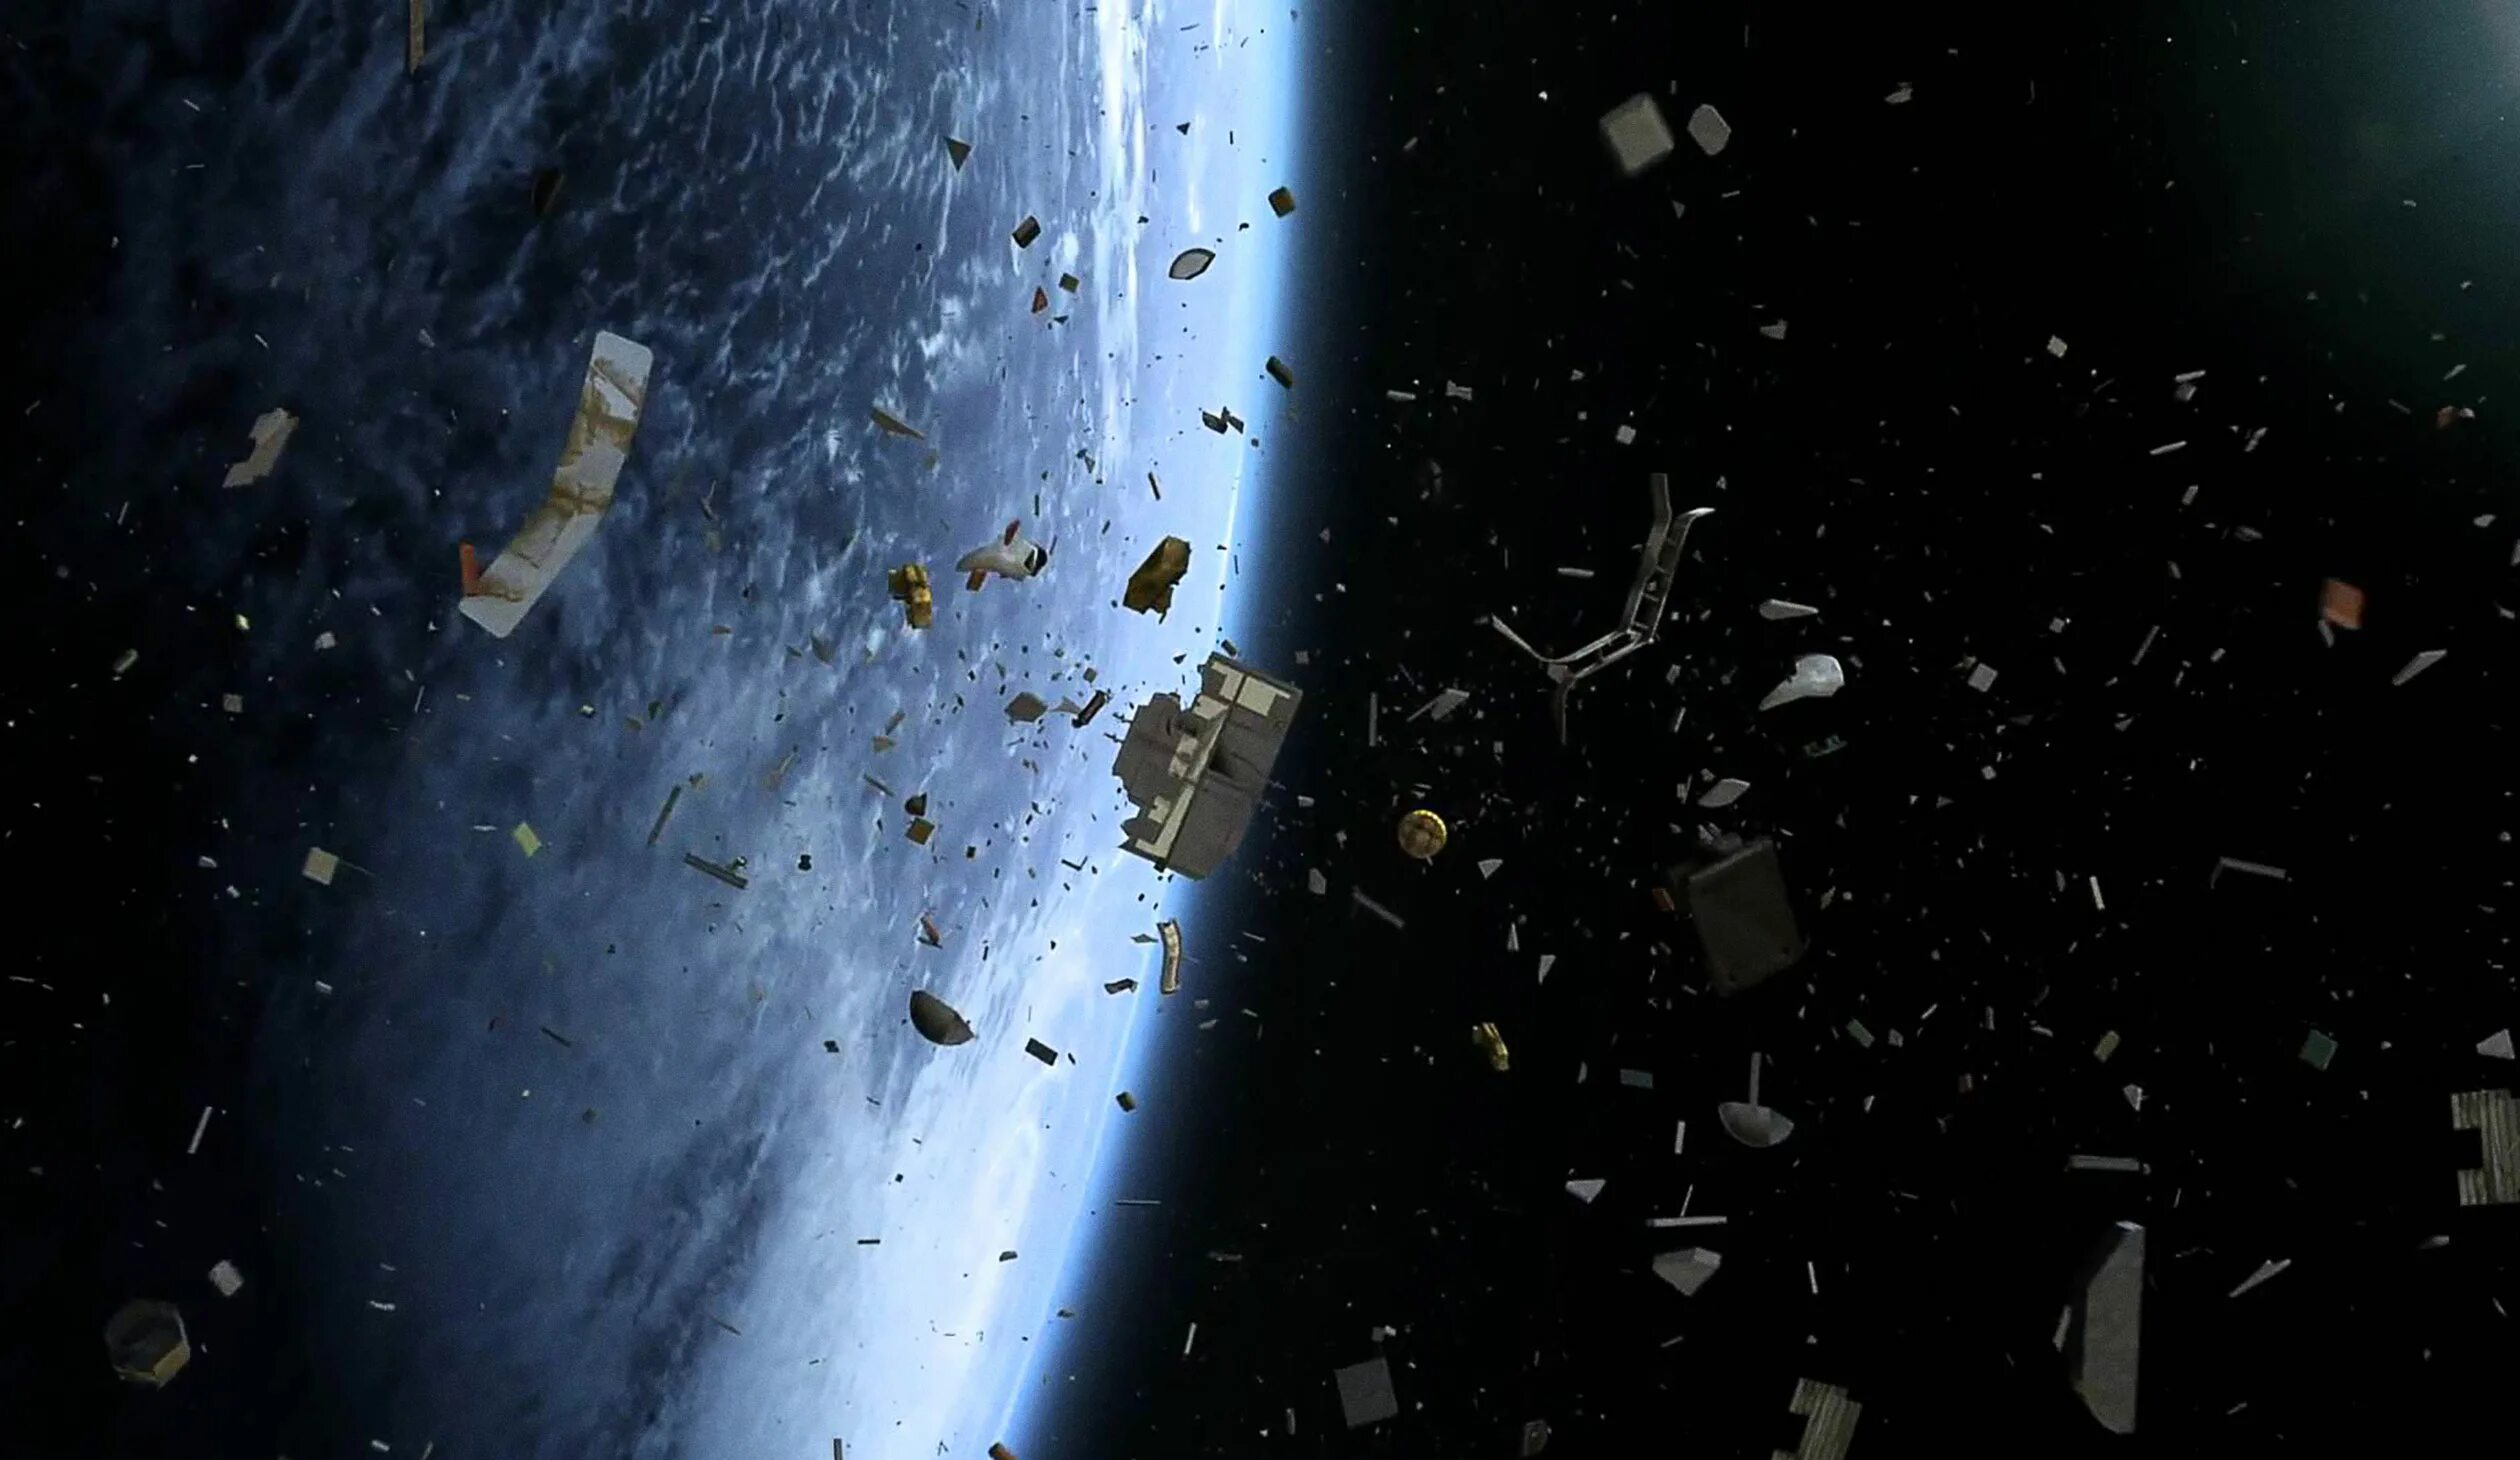 Space junk. Снимки космического мусора на орбите. Обломки спутников на орбите. Космический мусор Роскосмос. Космический мусор на орбите земли.